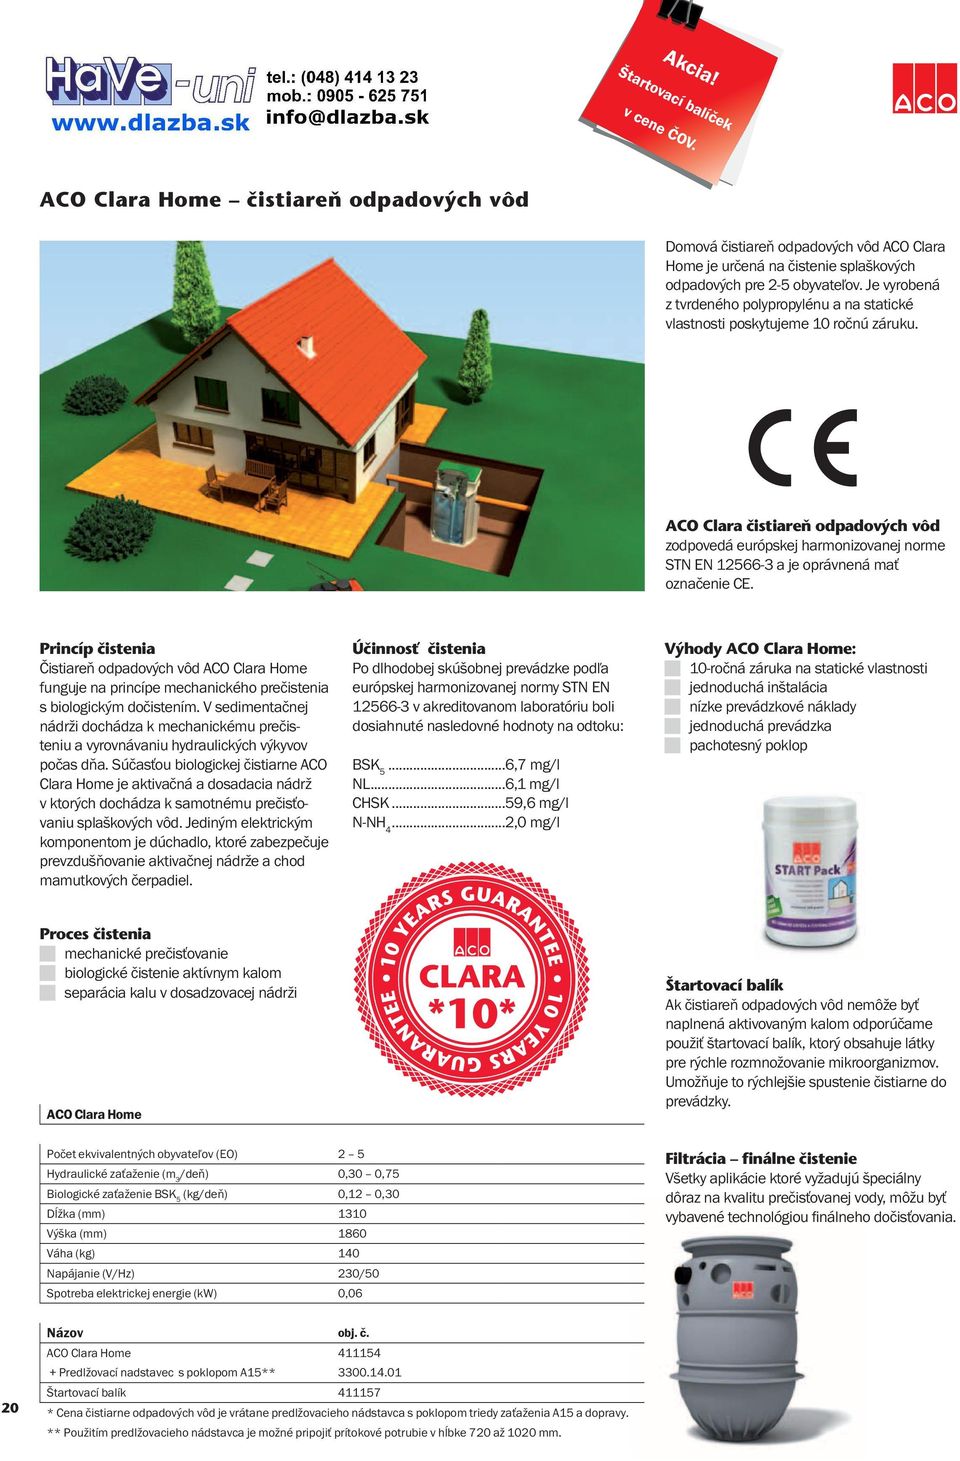 ACO Clara čistiareň odpadových vôd zodpovedá európskej harmonizovanej norme STN EN 12566-3 a je oprávnená mať označenie CE.